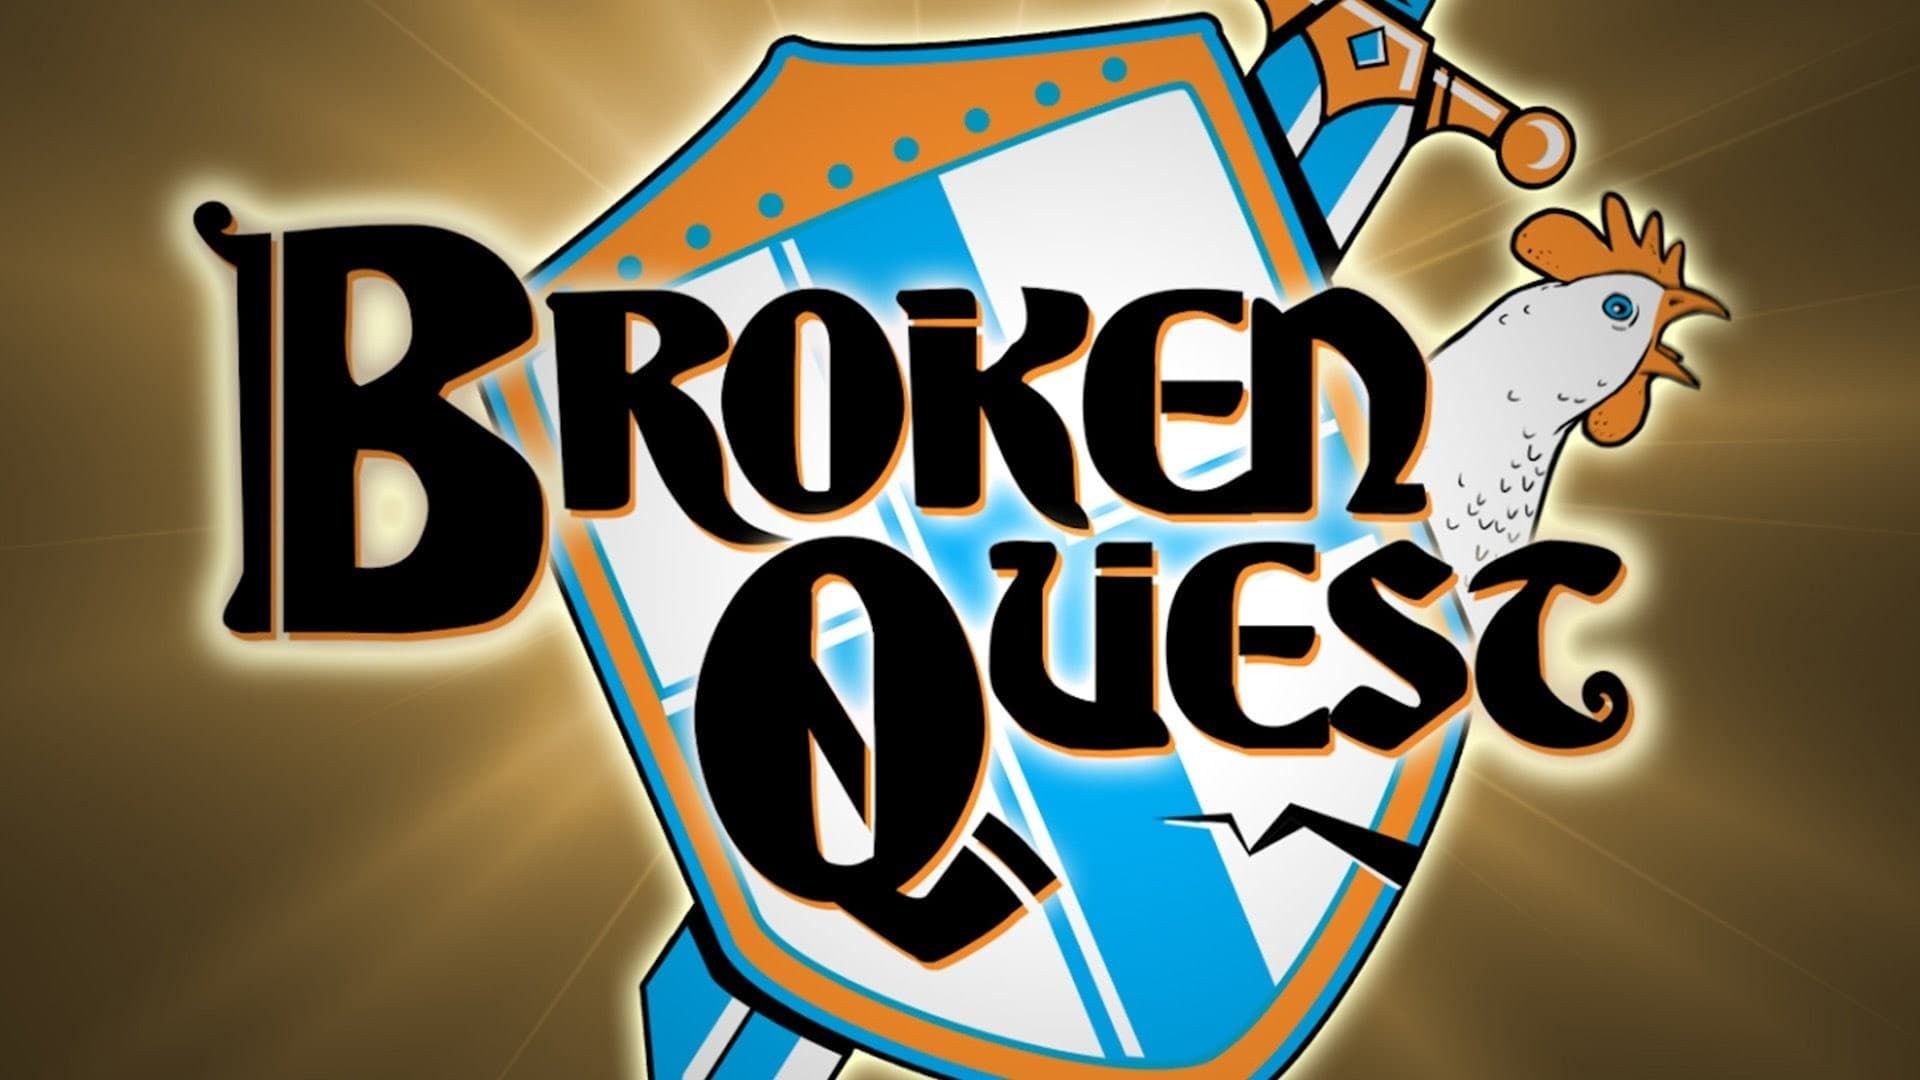 Broken Quest background